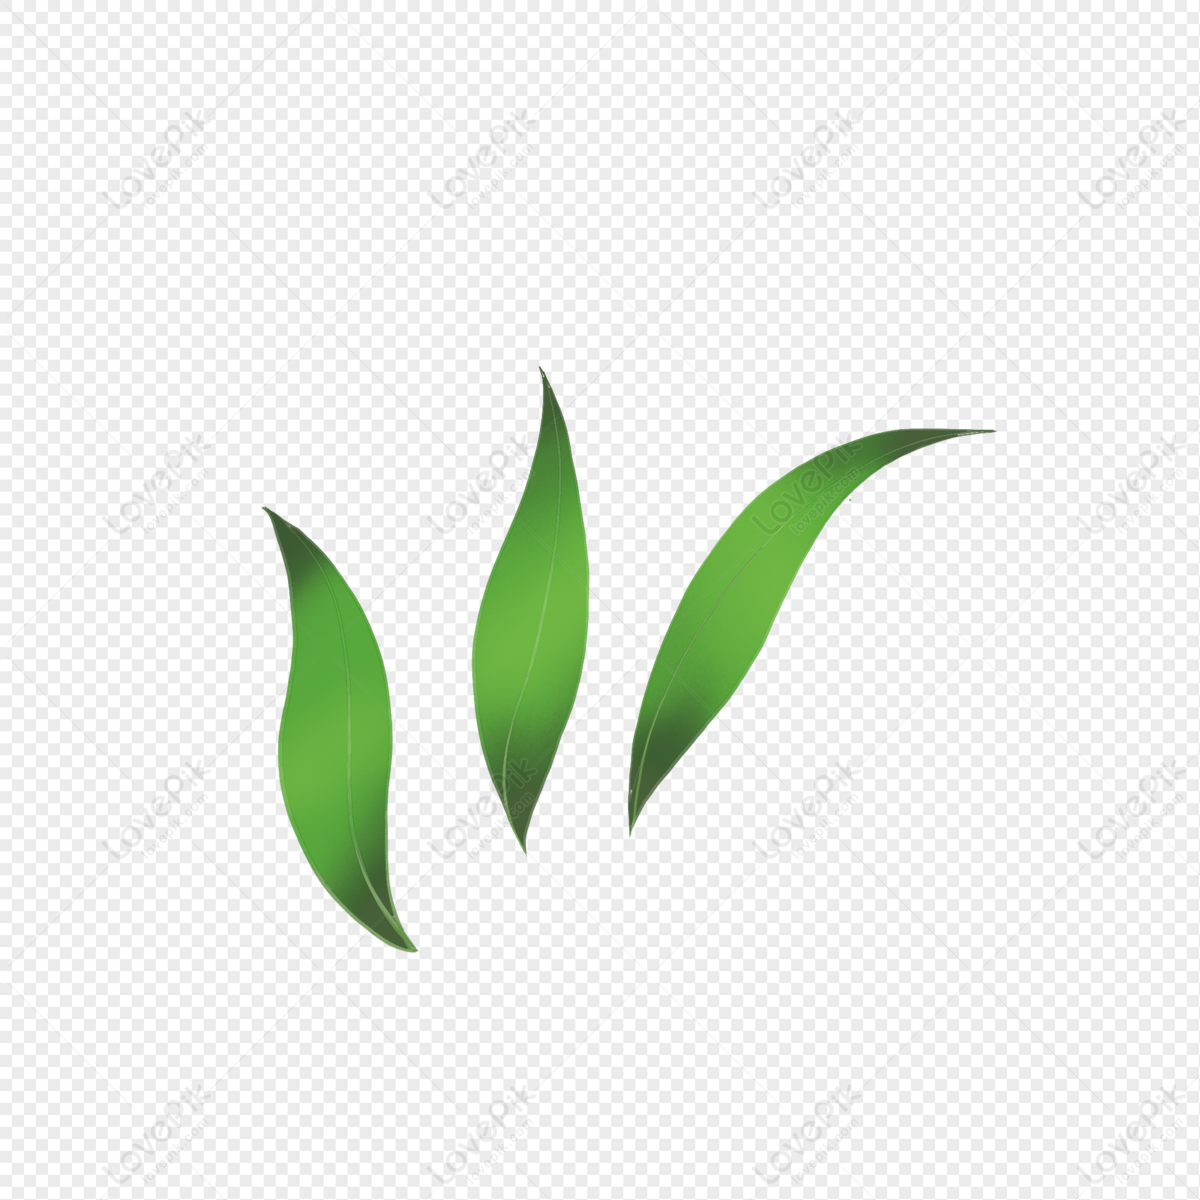 3 Leaf PNG Transparent Images Free Download | Vector Files | Pngtree